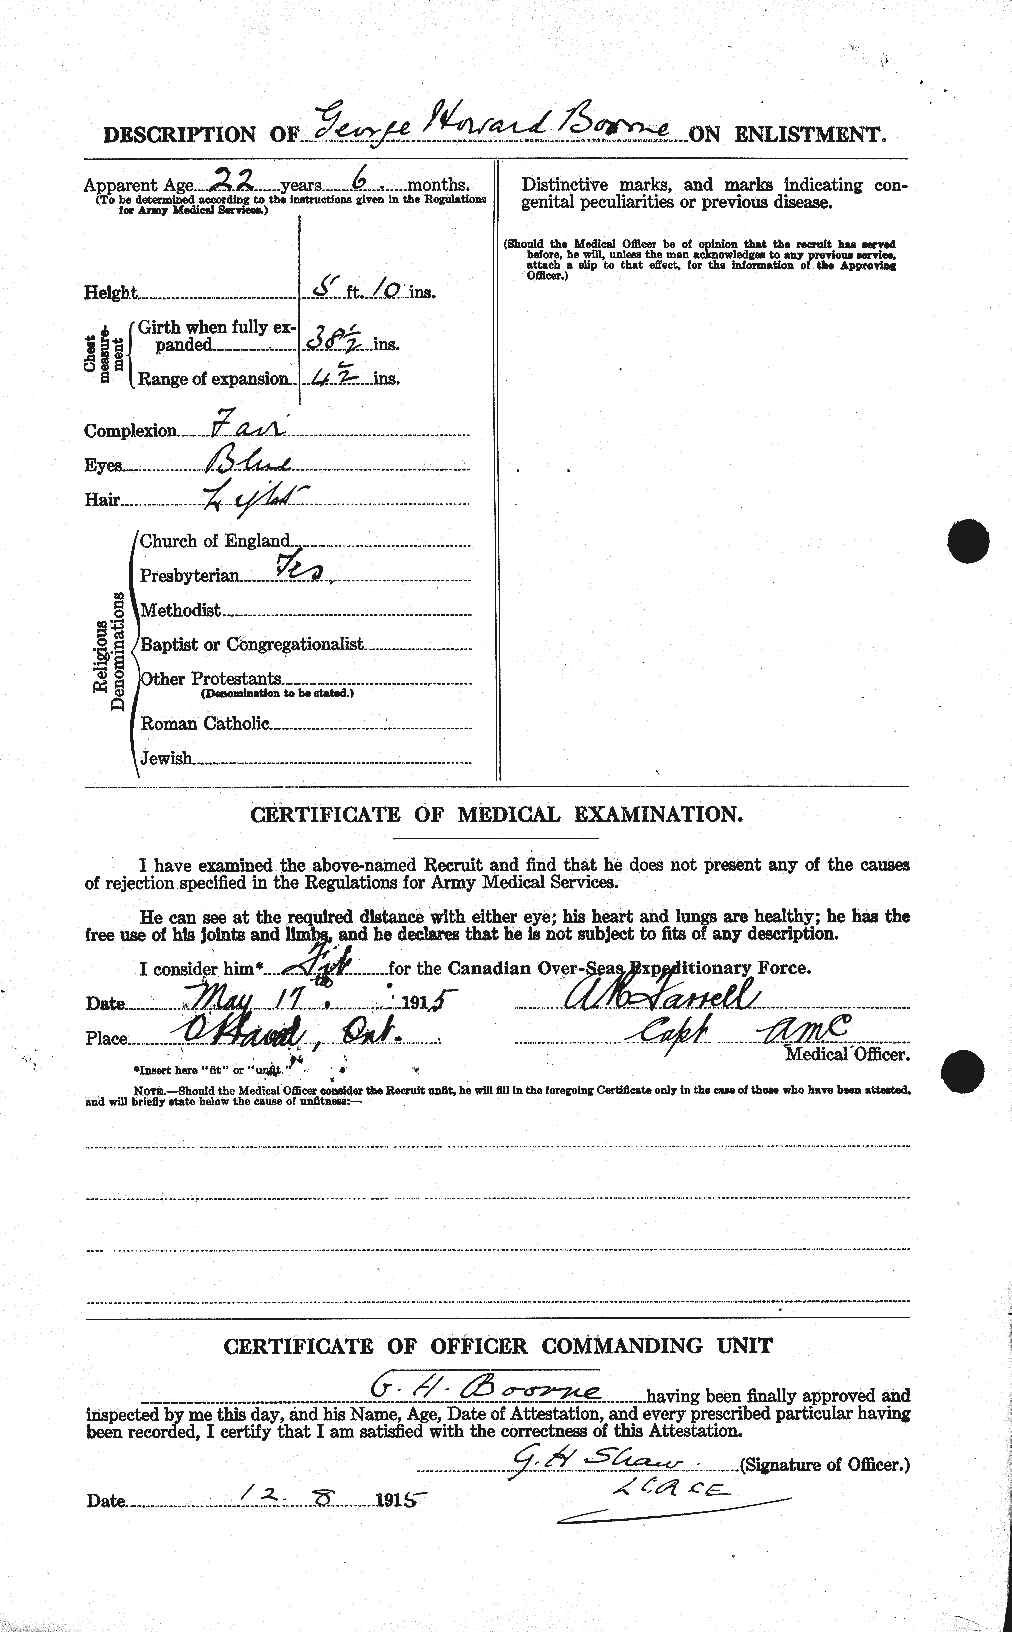 Dossiers du Personnel de la Première Guerre mondiale - CEC 251380b